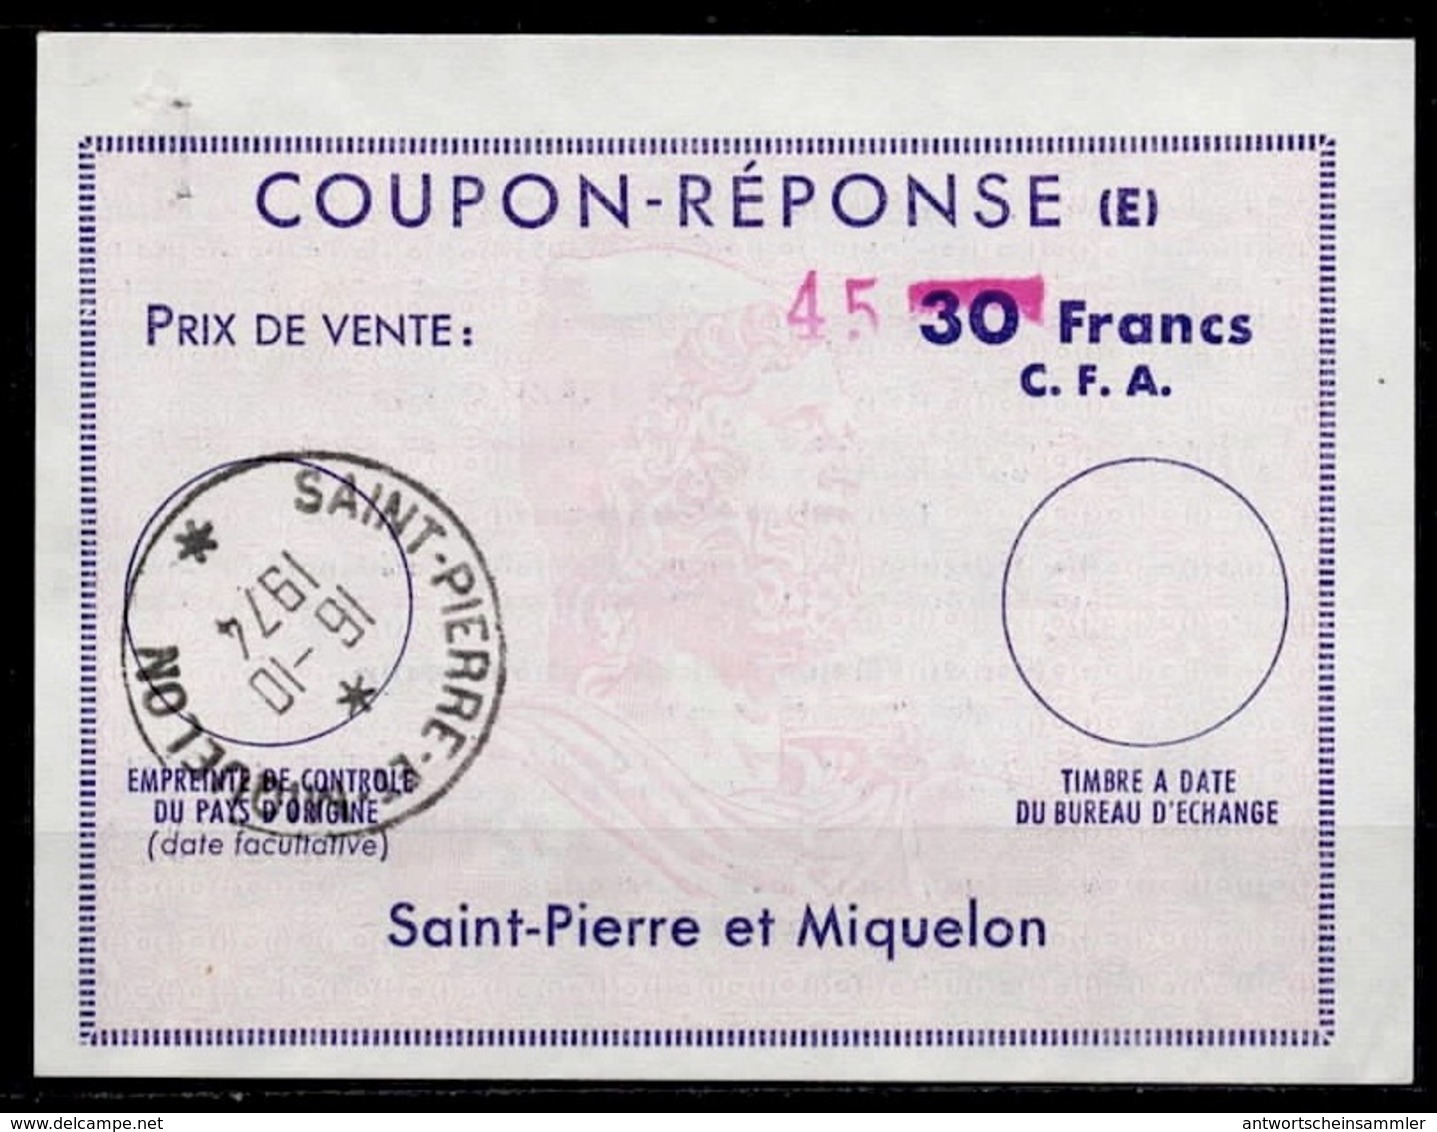 ST. PIERRE ET MIQUELON Ex10  HS 45 On 30 Francs C.F.A. Reply Coupon Reponse (E) Antwortschein o SPM 16.10.74 - Ganzsachen